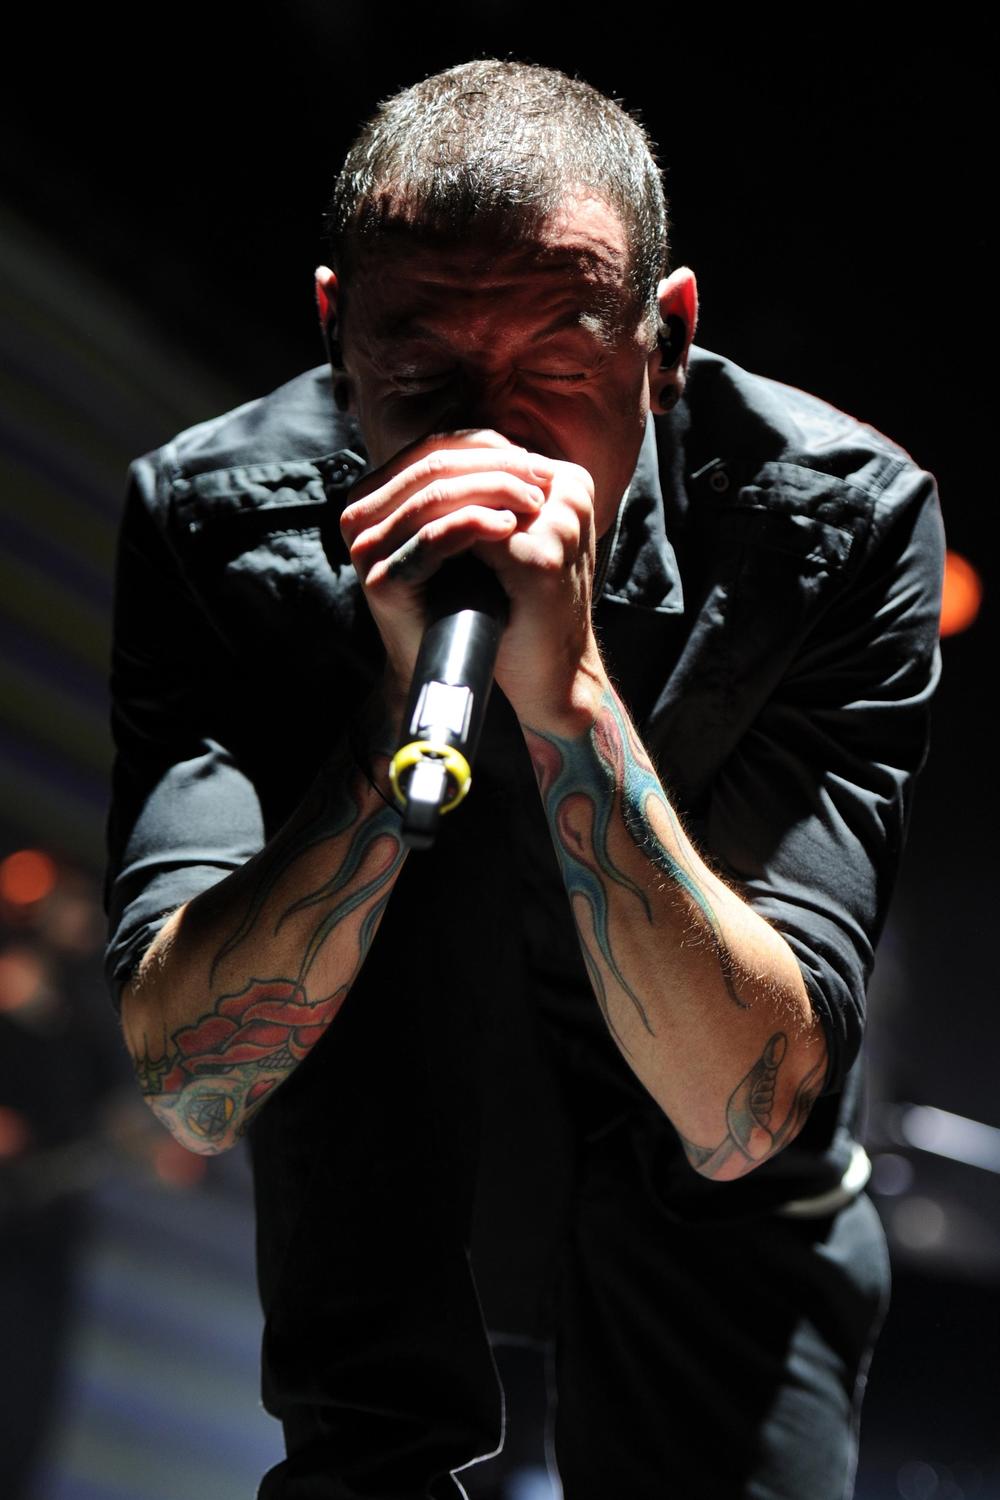 <p>Fanove grupe <em>Linkin park</em> juče je šokirala vest da je frontmen ovog benda izvršio samoubistvo.</p>